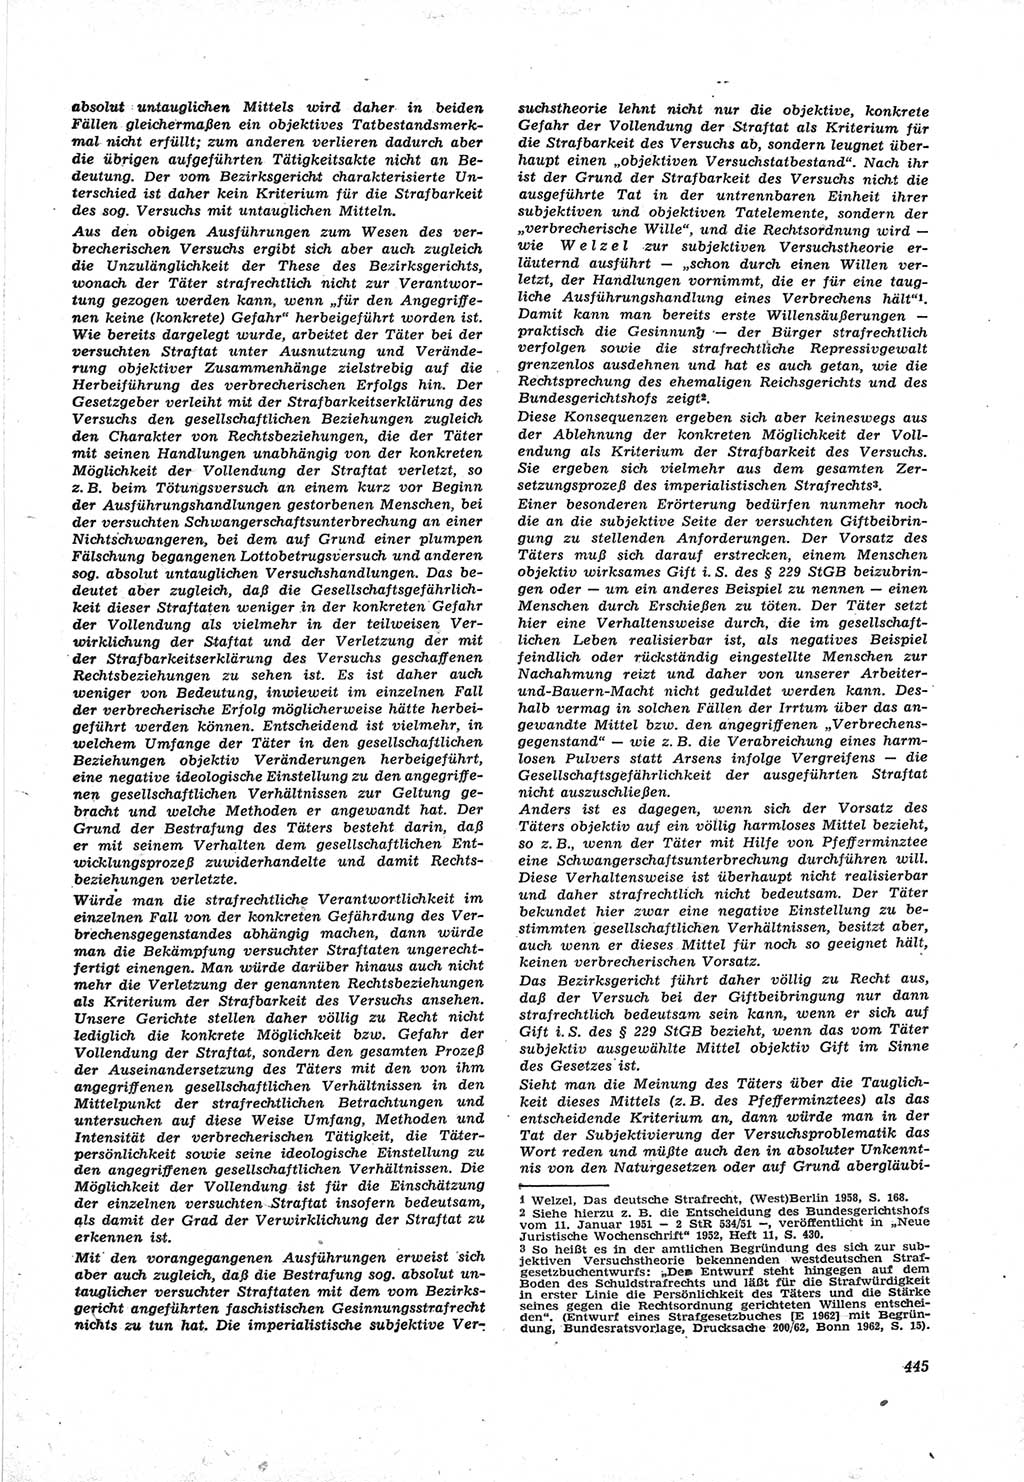 Neue Justiz (NJ), Zeitschrift für Recht und Rechtswissenschaft [Deutsche Demokratische Republik (DDR)], 17. Jahrgang 1963, Seite 445 (NJ DDR 1963, S. 445)